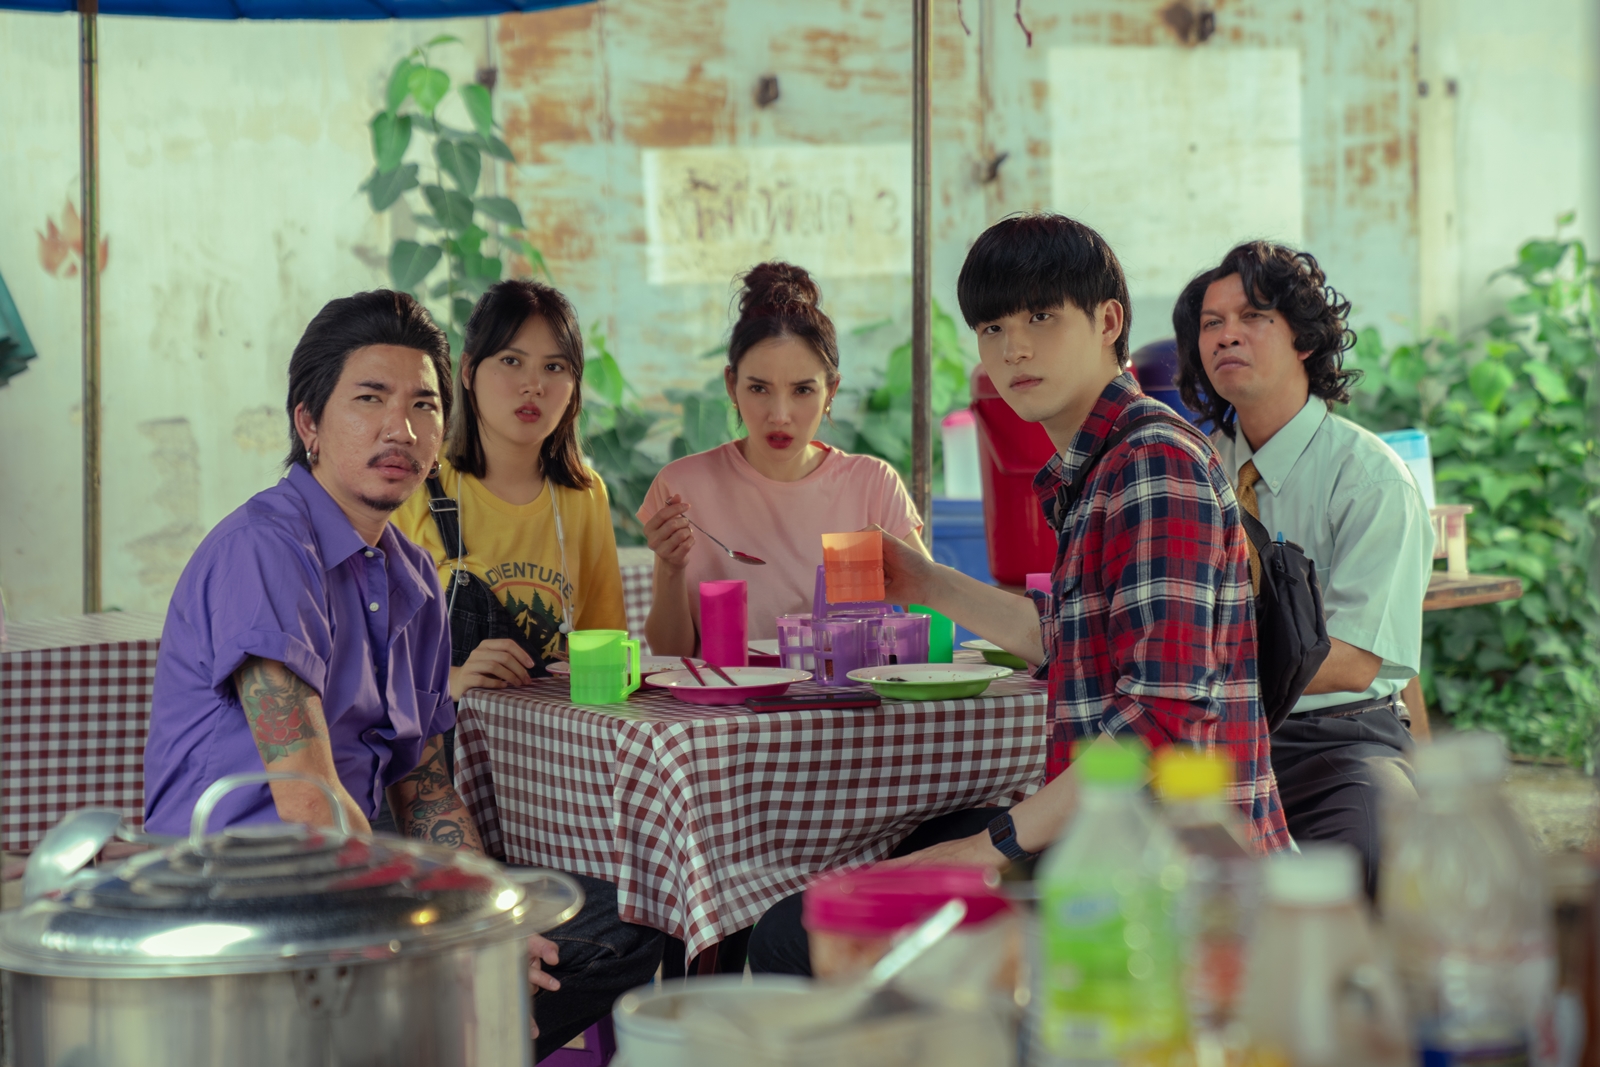 งวดหน้าเจอกัน! 3 เหตุผลห้ามพลาดชม ปฏิบัติการกู้หวย ภาพยนตร์ไทยสุดฮาจาก Netflix การันตีโดย พฤกษ์ เอมะรุจิ